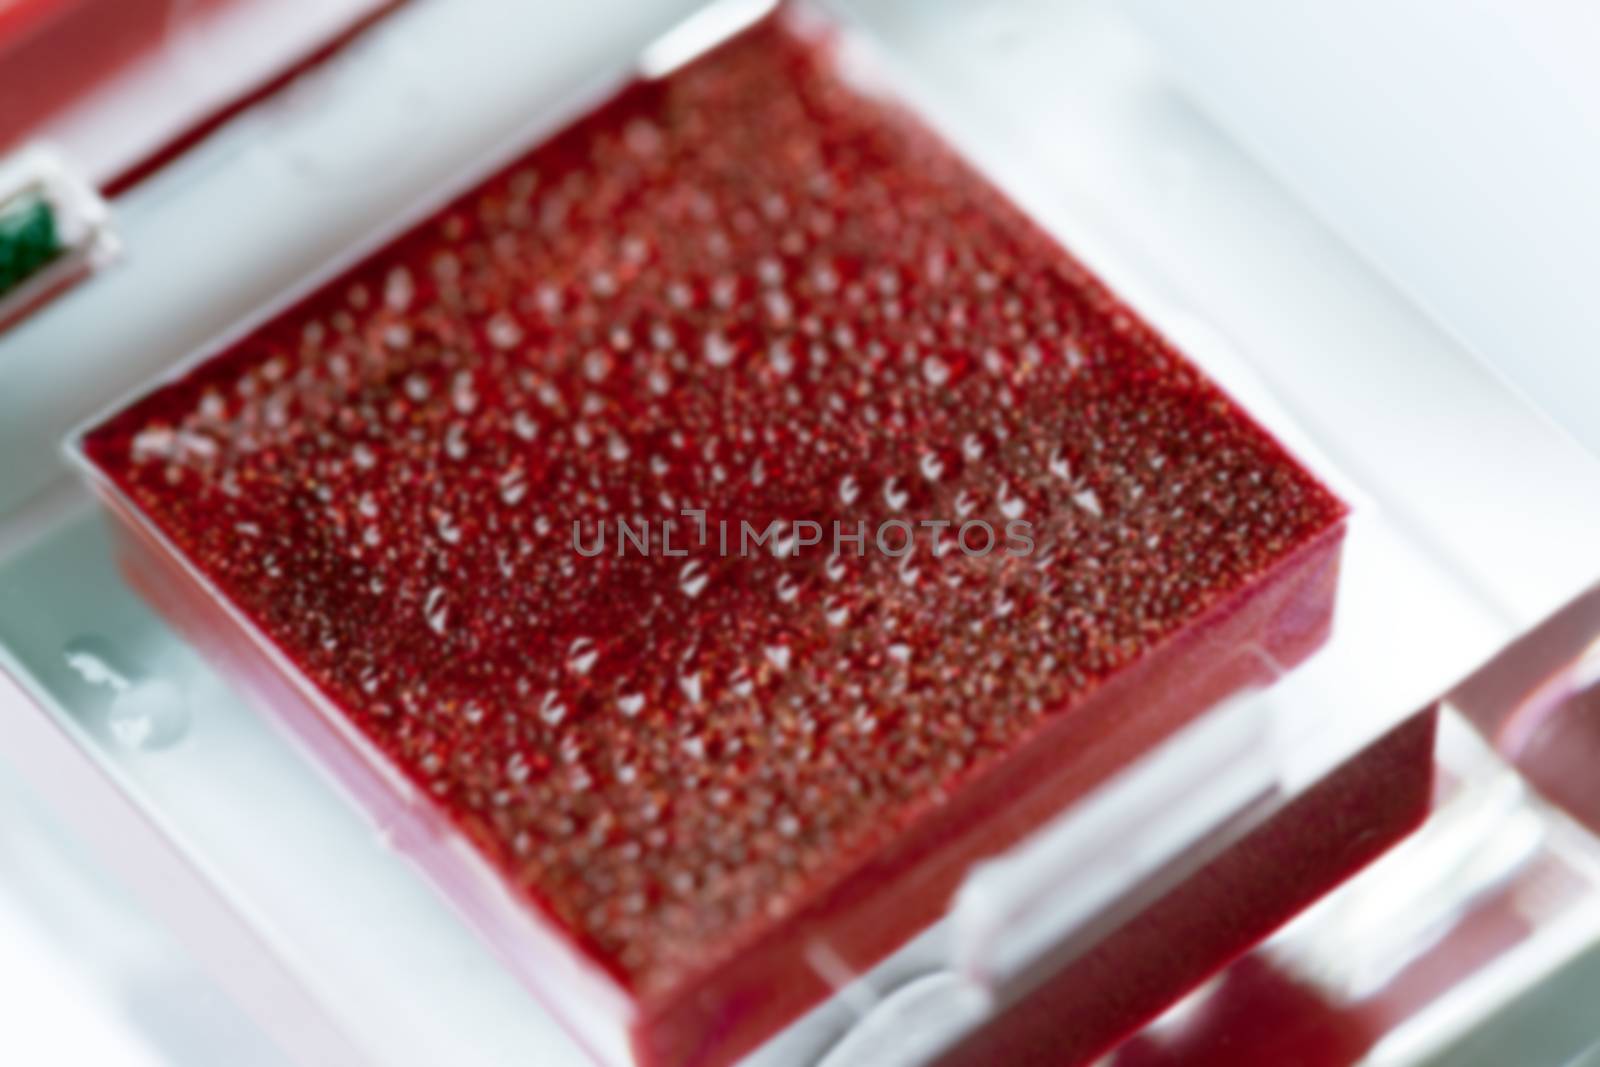 photographed close-up cosmetics female red lip, defocused, defocus